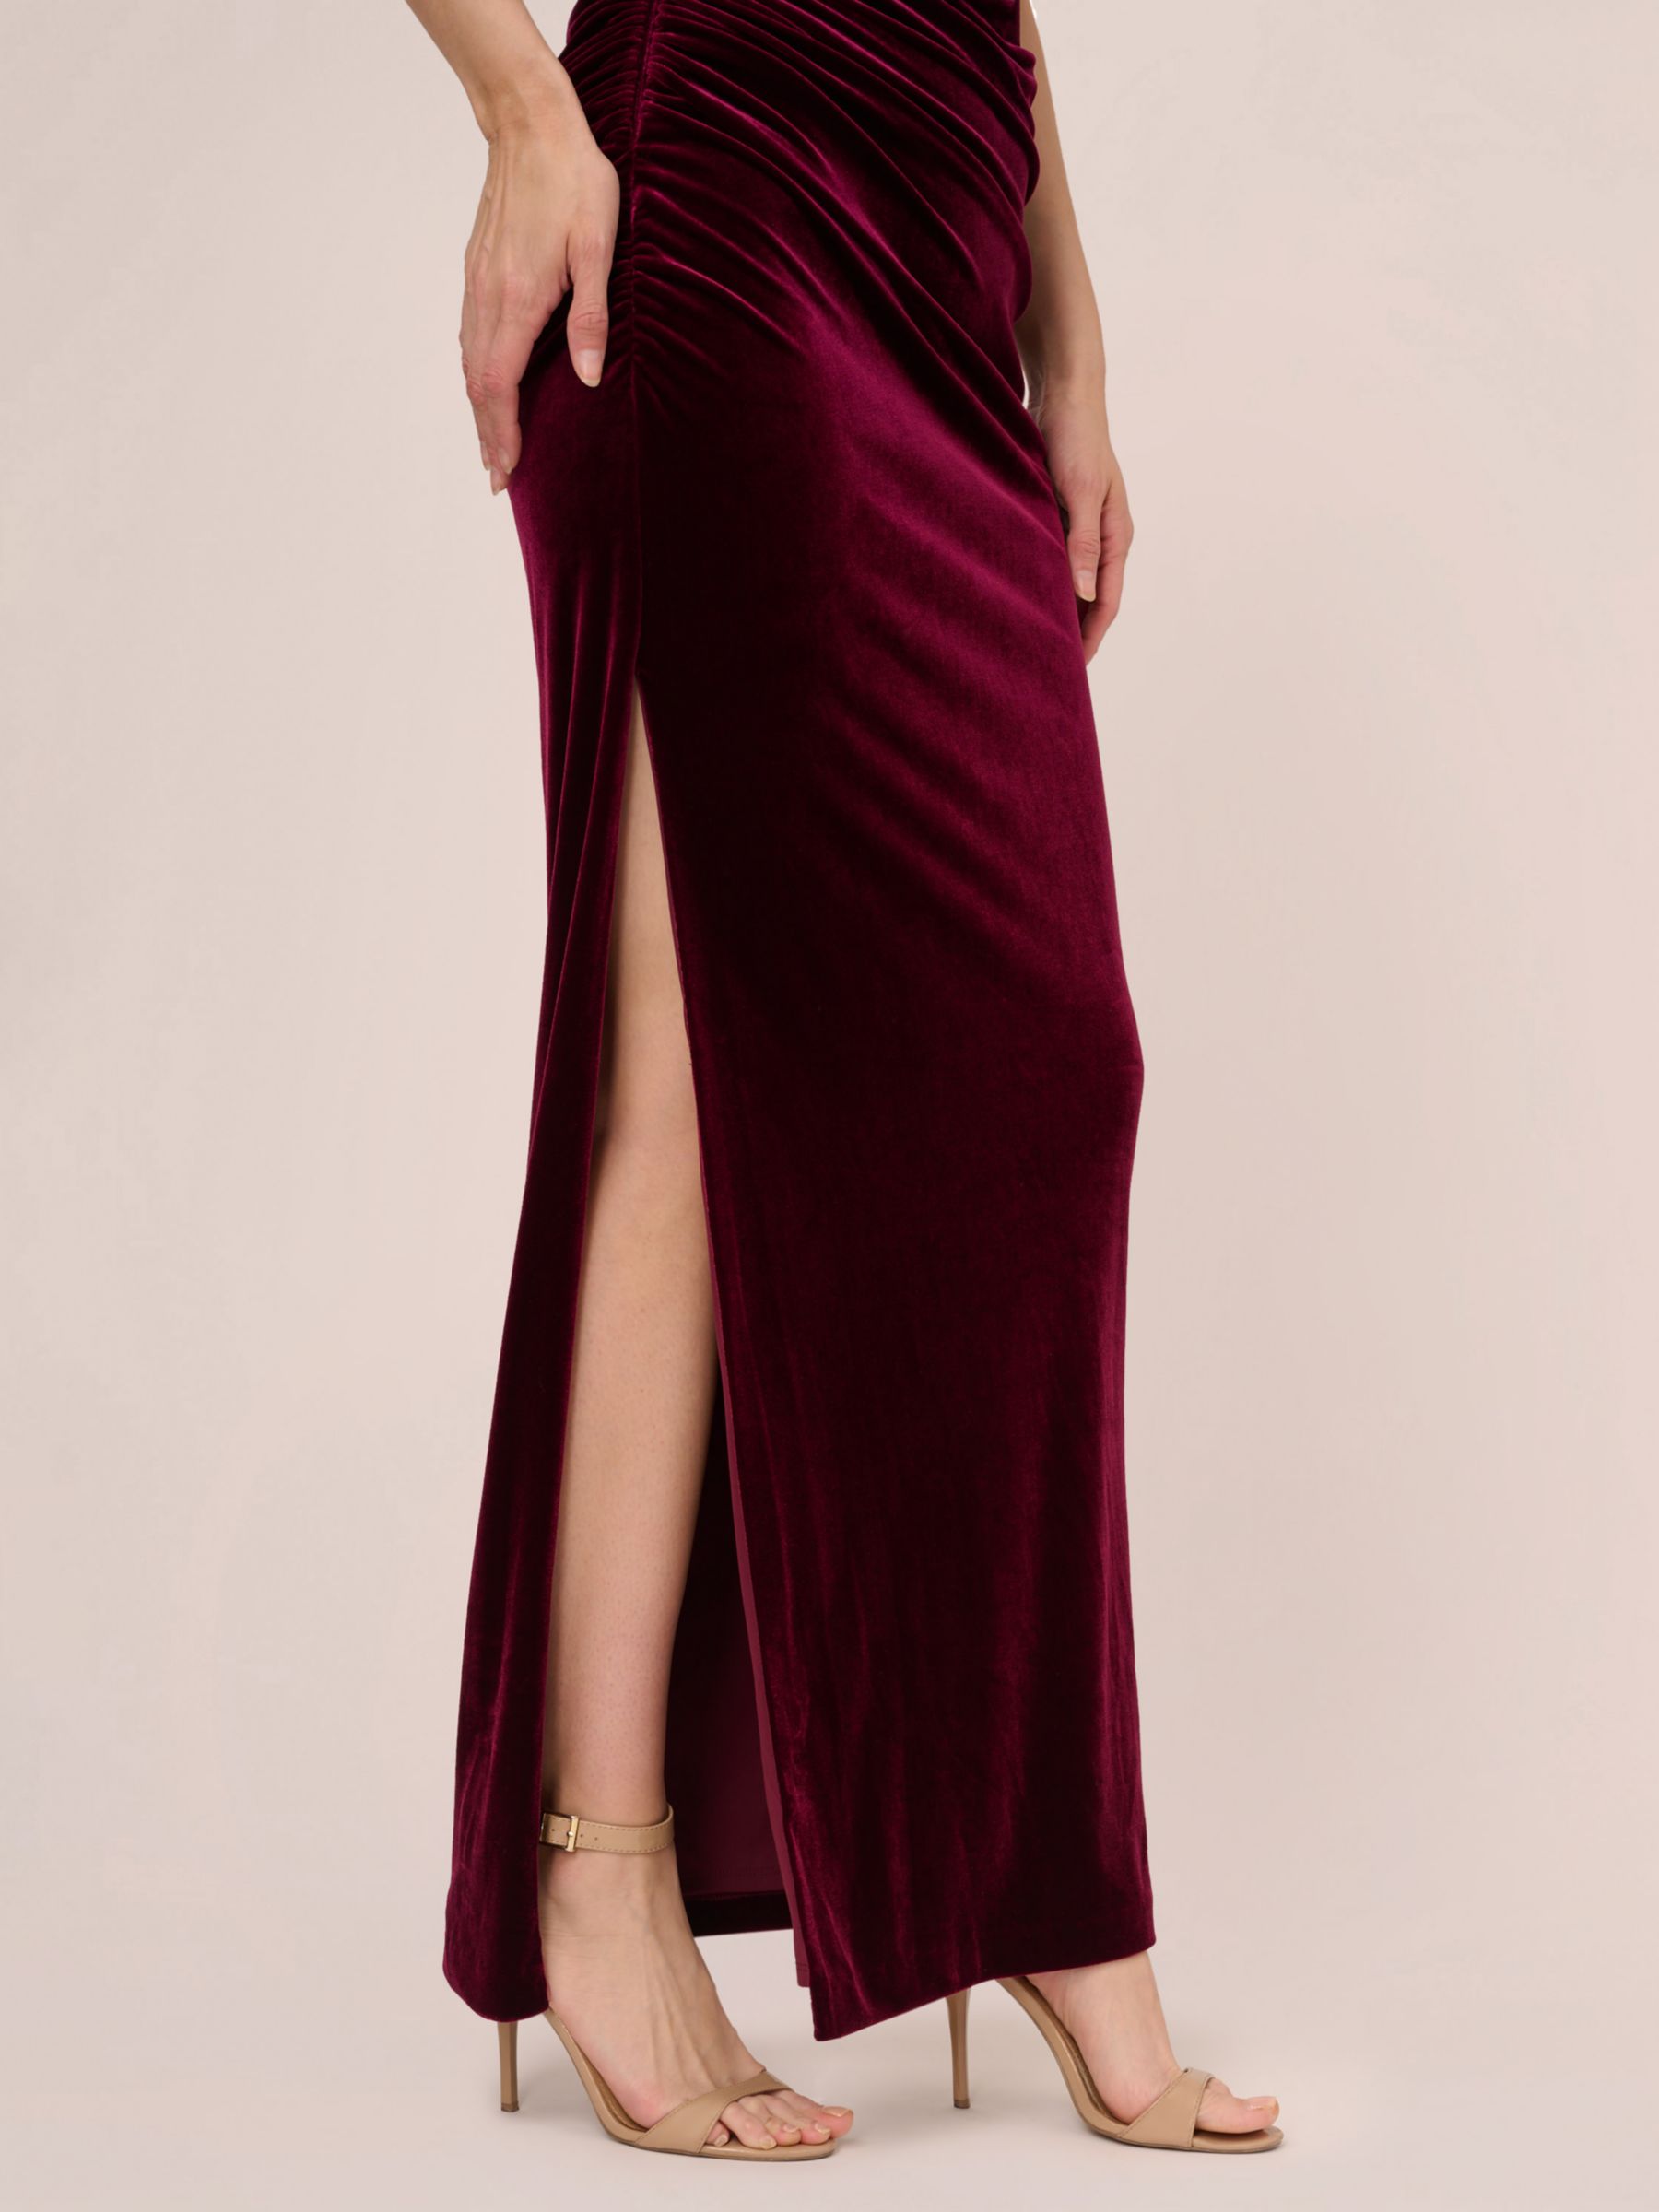 Adrianna Papell Velvet One Shoulder Maxi Dress, Burgundy